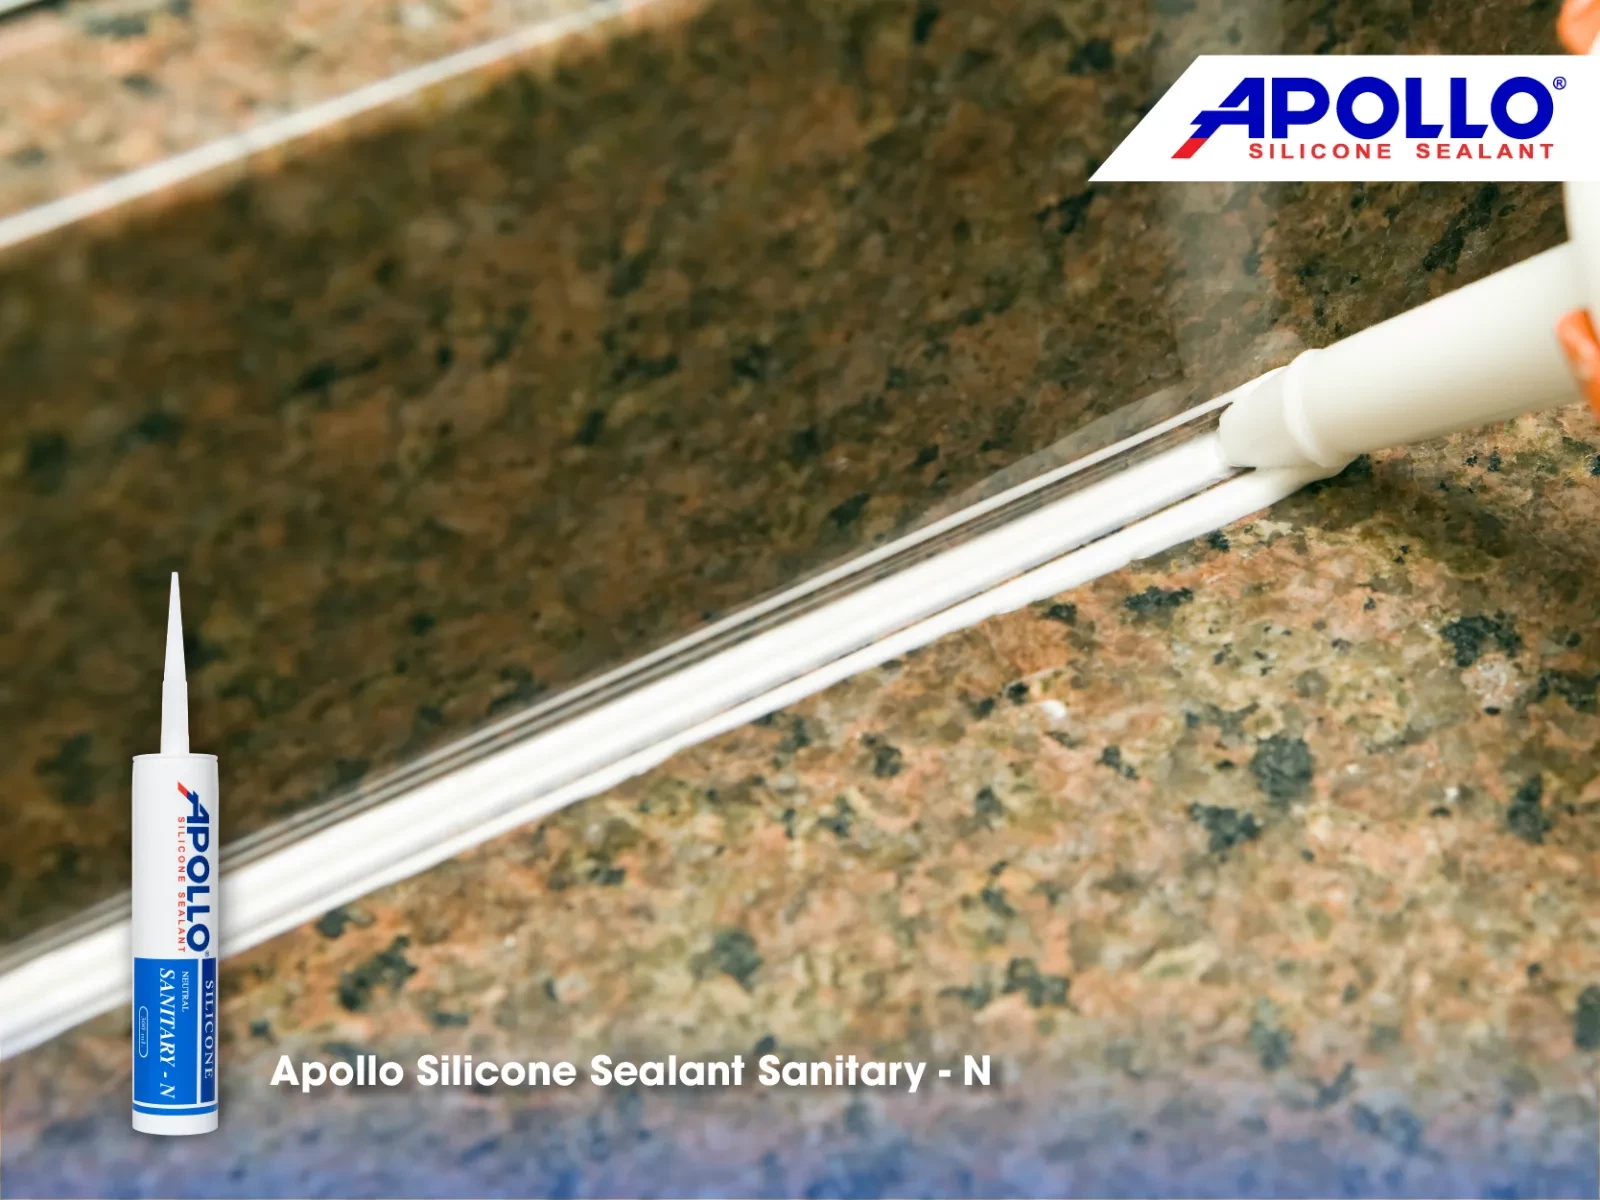 Sản phẩm Apollo Sanitary - N bám dính tốt trên mọi vật liệu có thể dùng để trám trét thẩm mỹ cho các vị trí khác trong nhà tắm 